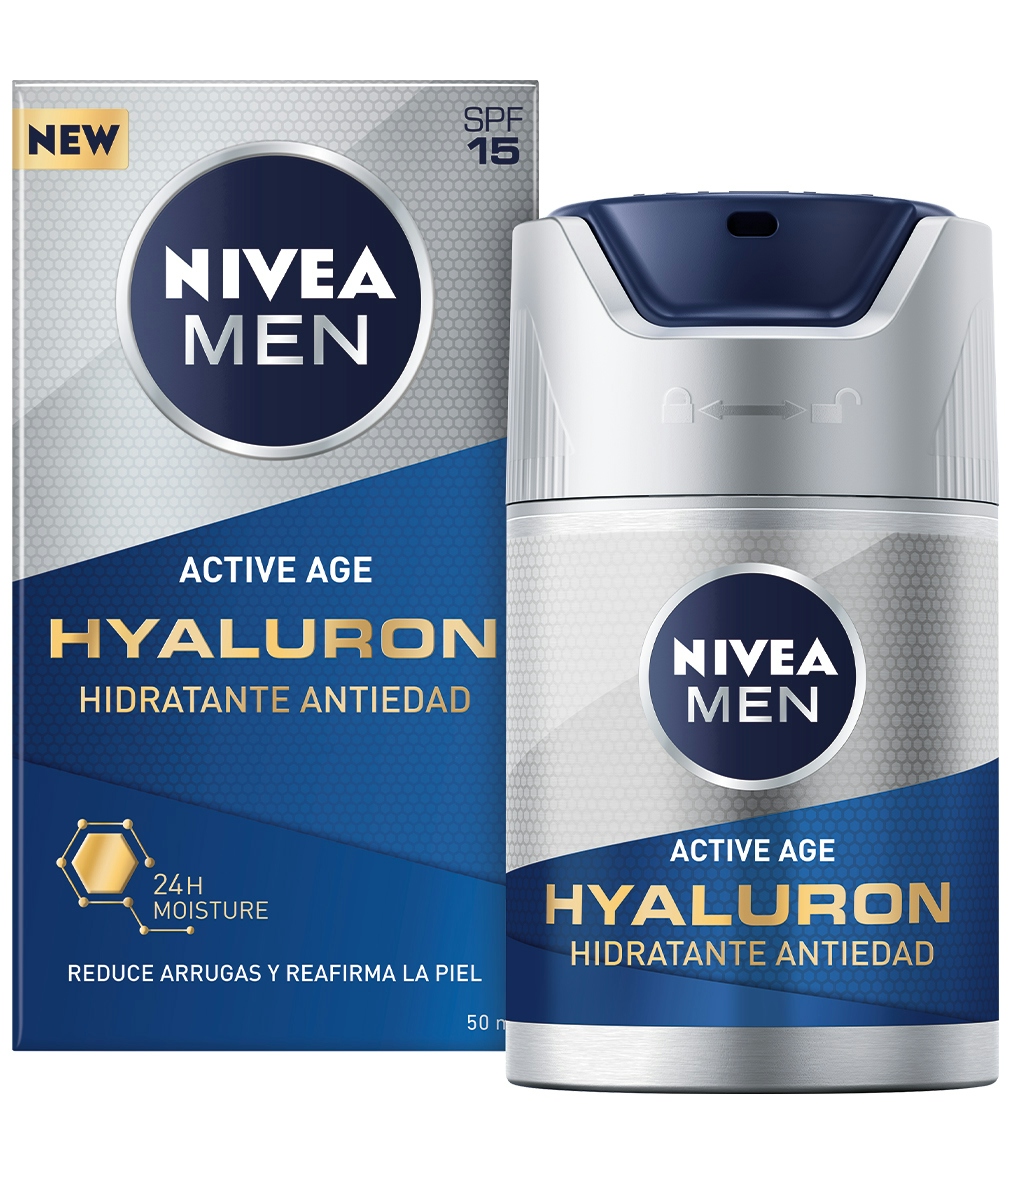 Crema antiarrugas NIVEA Men hidratante dosificador 50 ml